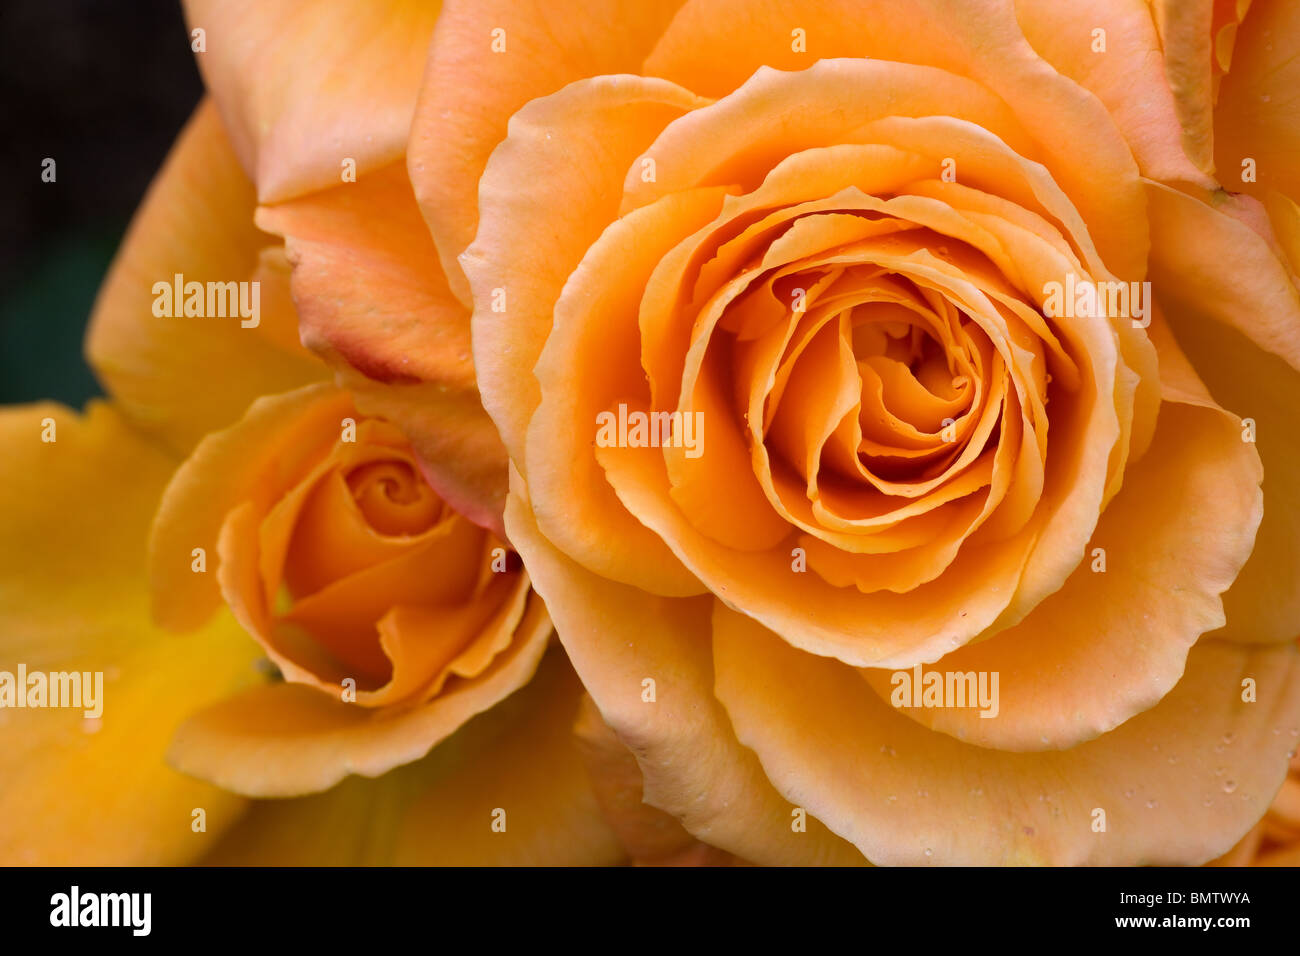 Roses, flowers, hobbies, gardening, green, nature Stock Photo